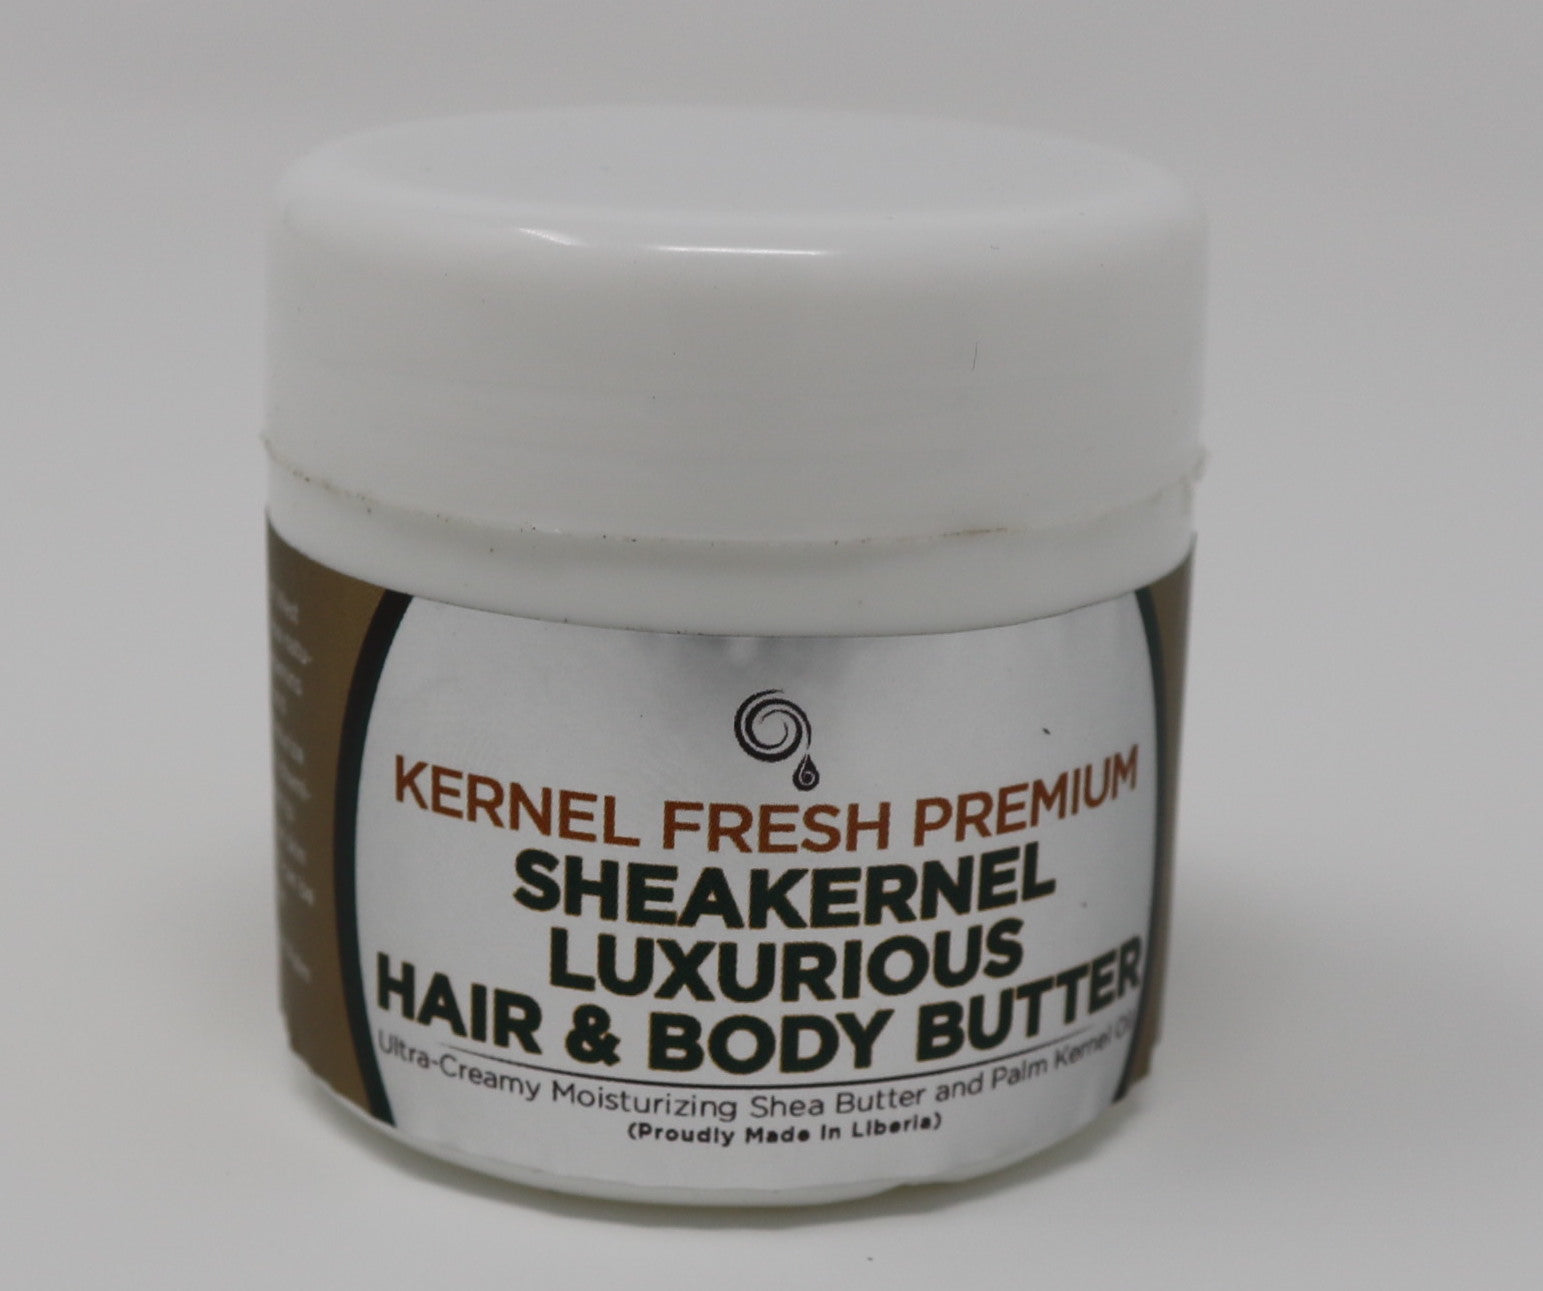 SheaKernel Premium Hair & Body Butter